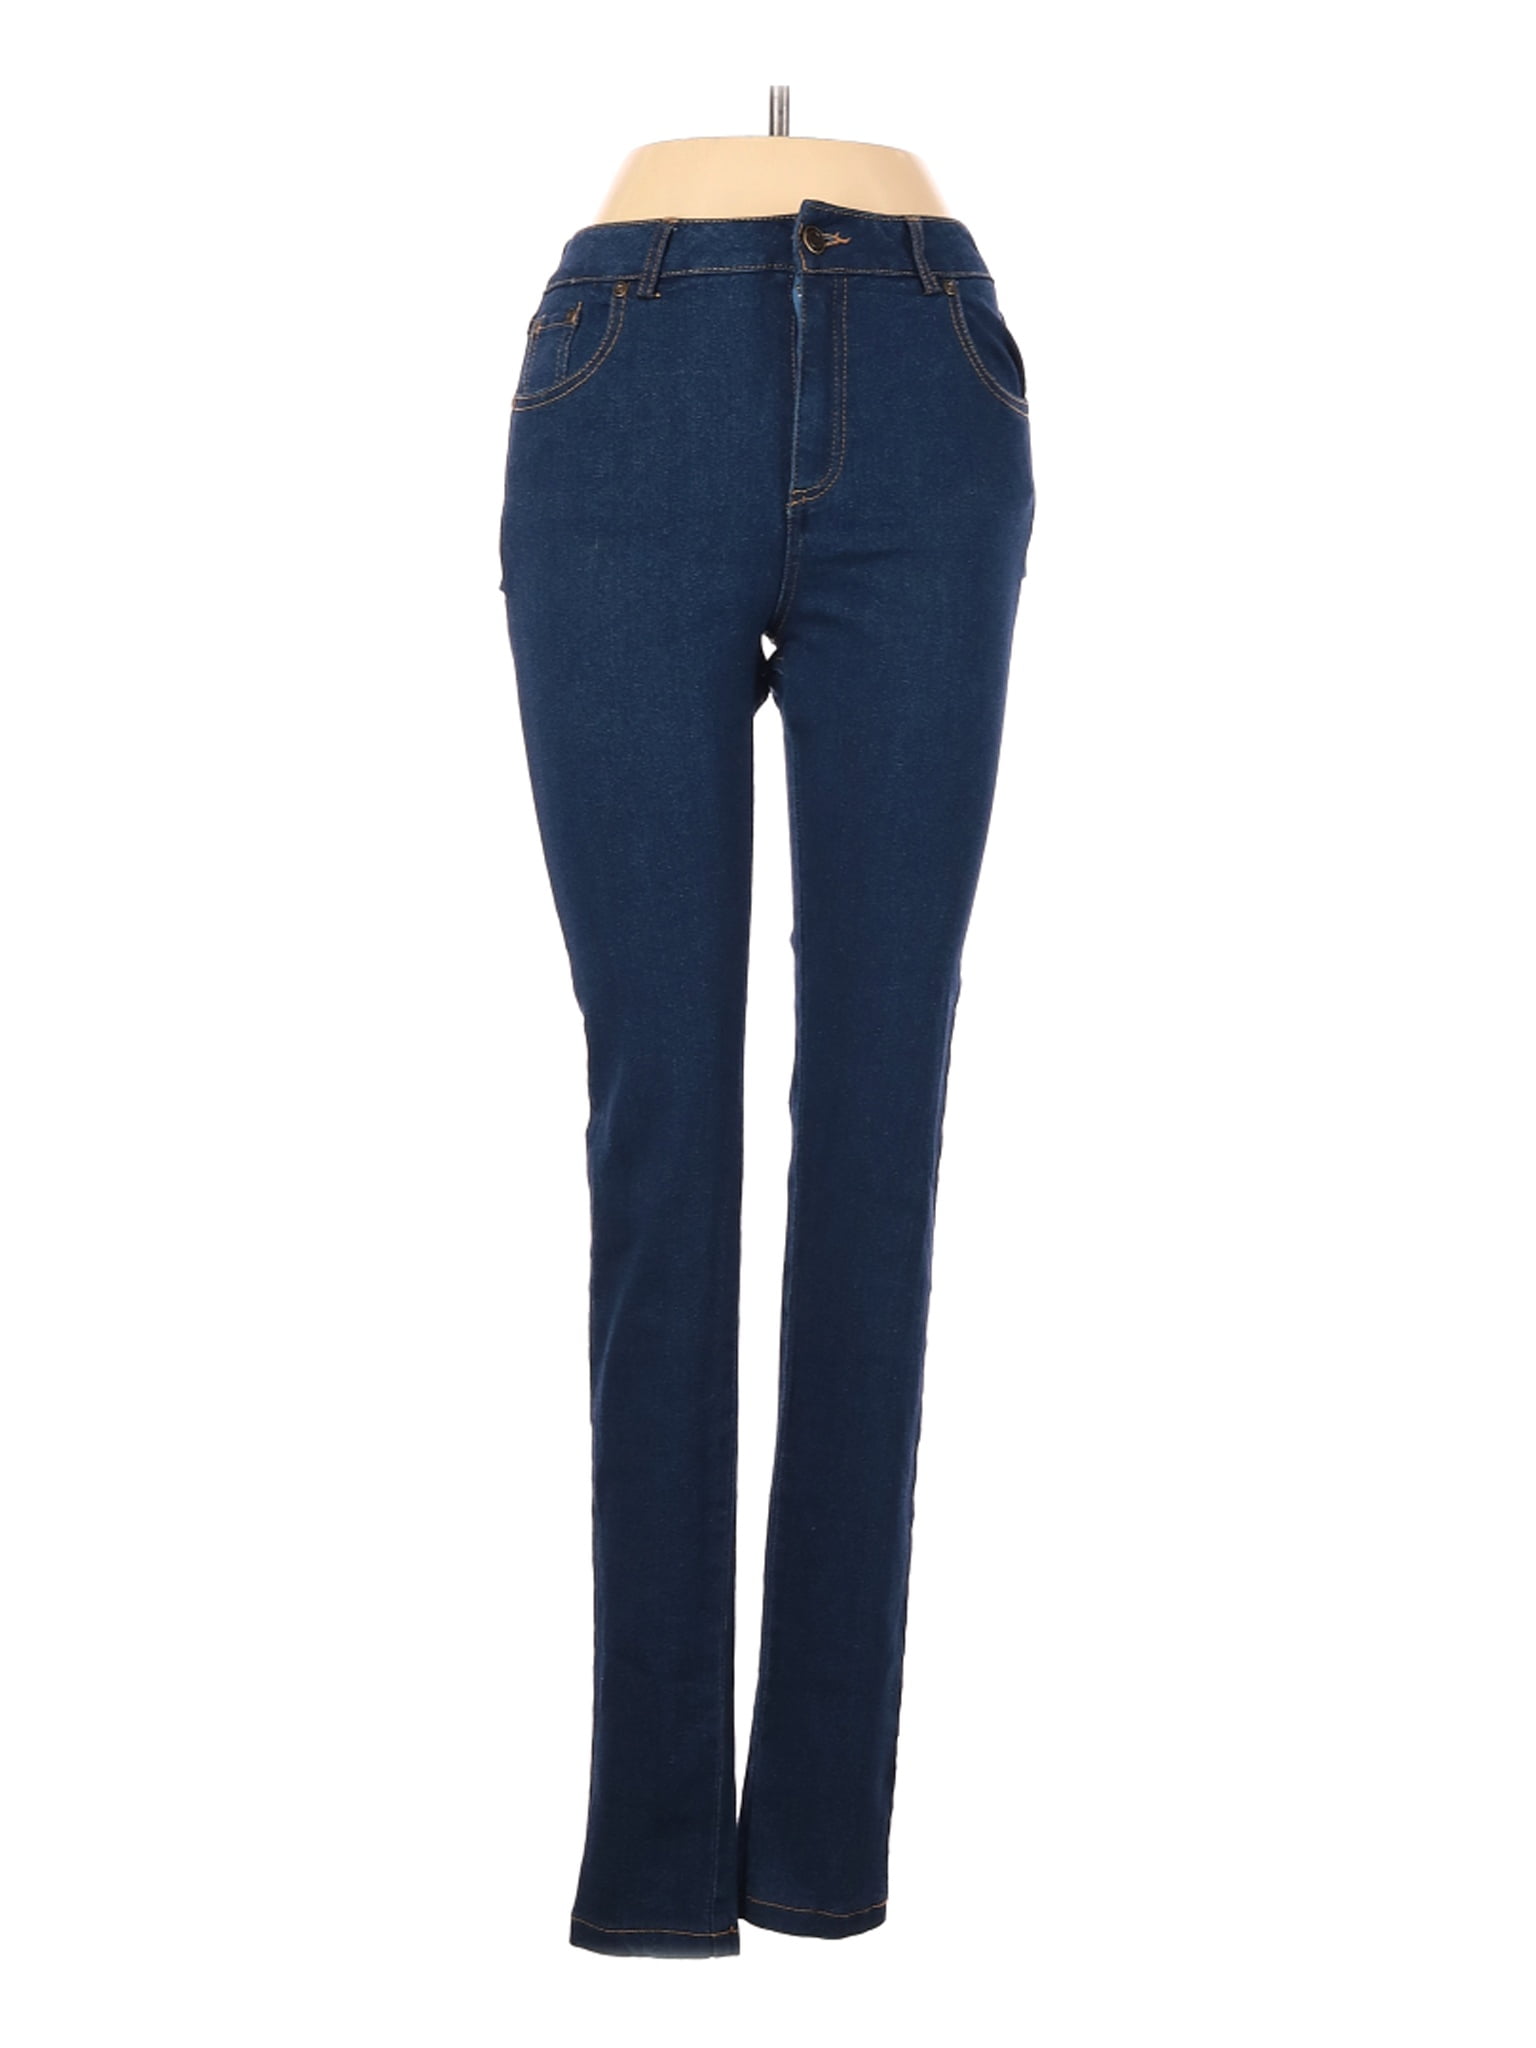 fashion nova jeans size 1